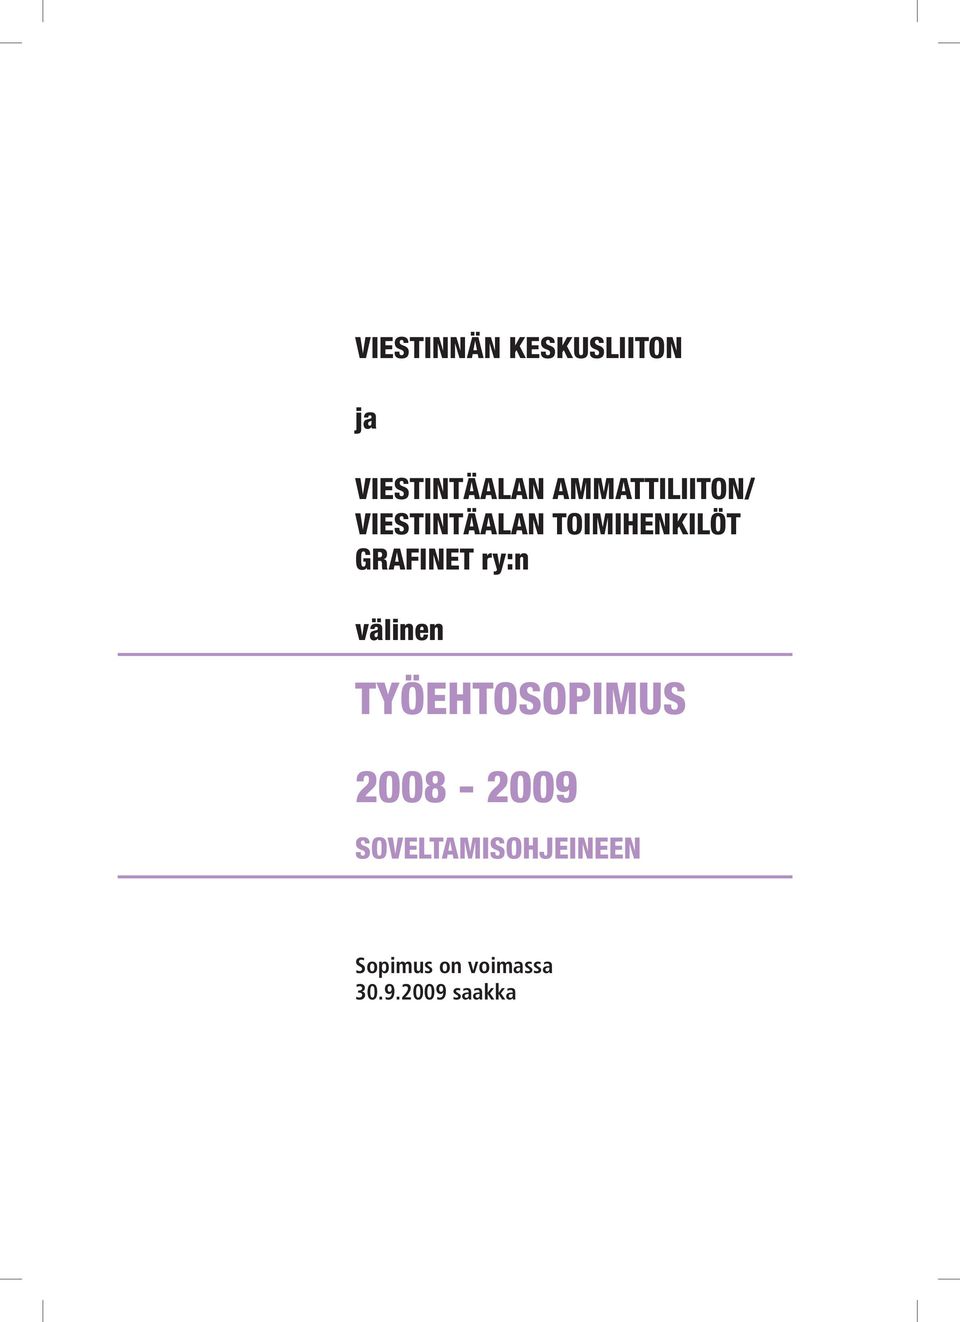 Grafinet ry:n välinen TYÖEHTOSOPIMUS 2008-2009